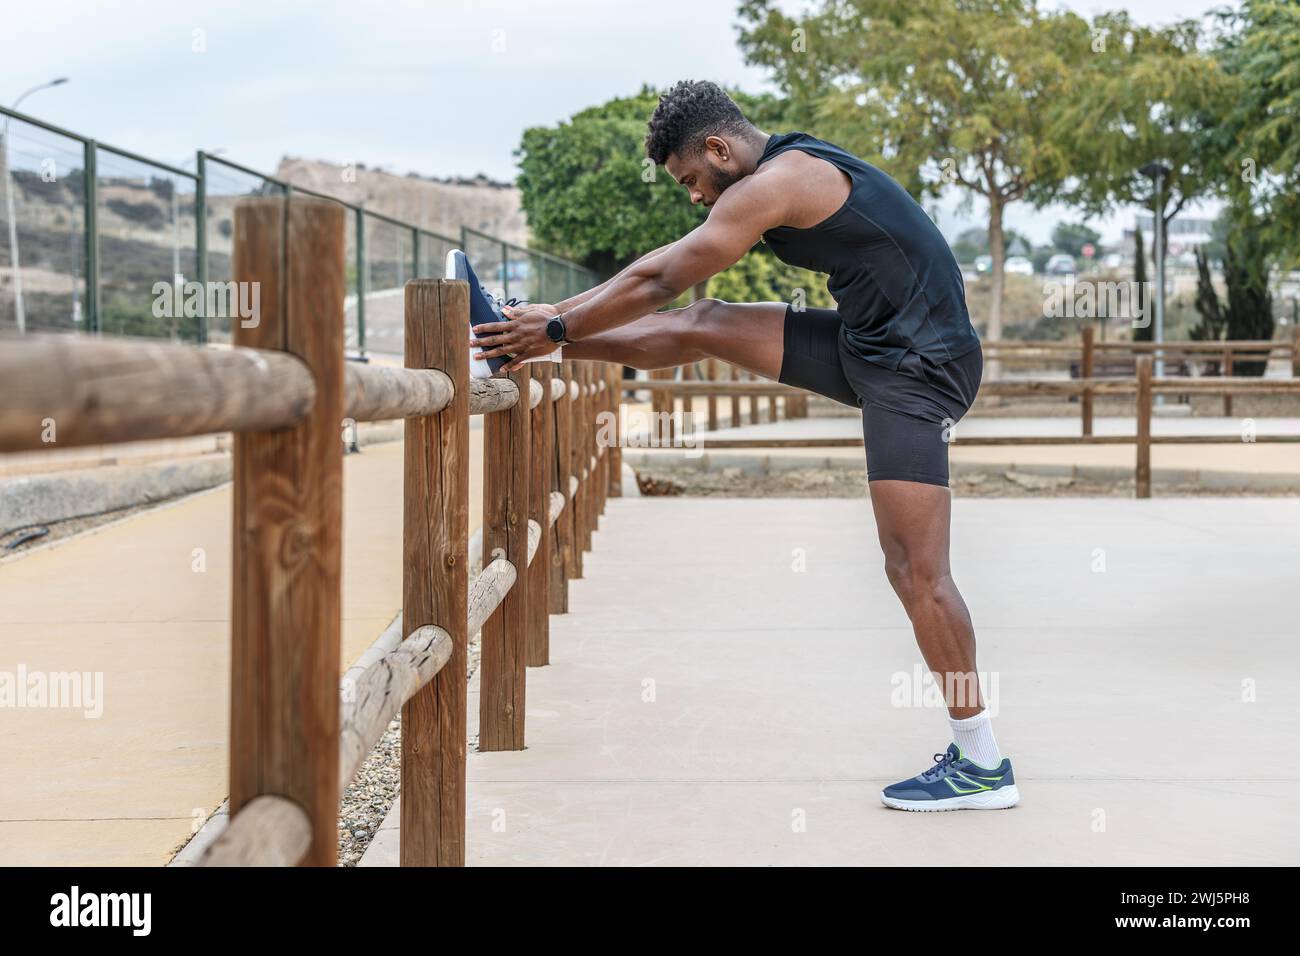 Ganzkörper-Seitenansicht eines starken afroamerikanischen Athleten, der das Bein auf einen Holzzaun legt und während des Fitnesstrainings mit den Zehen trainiert Stockfoto